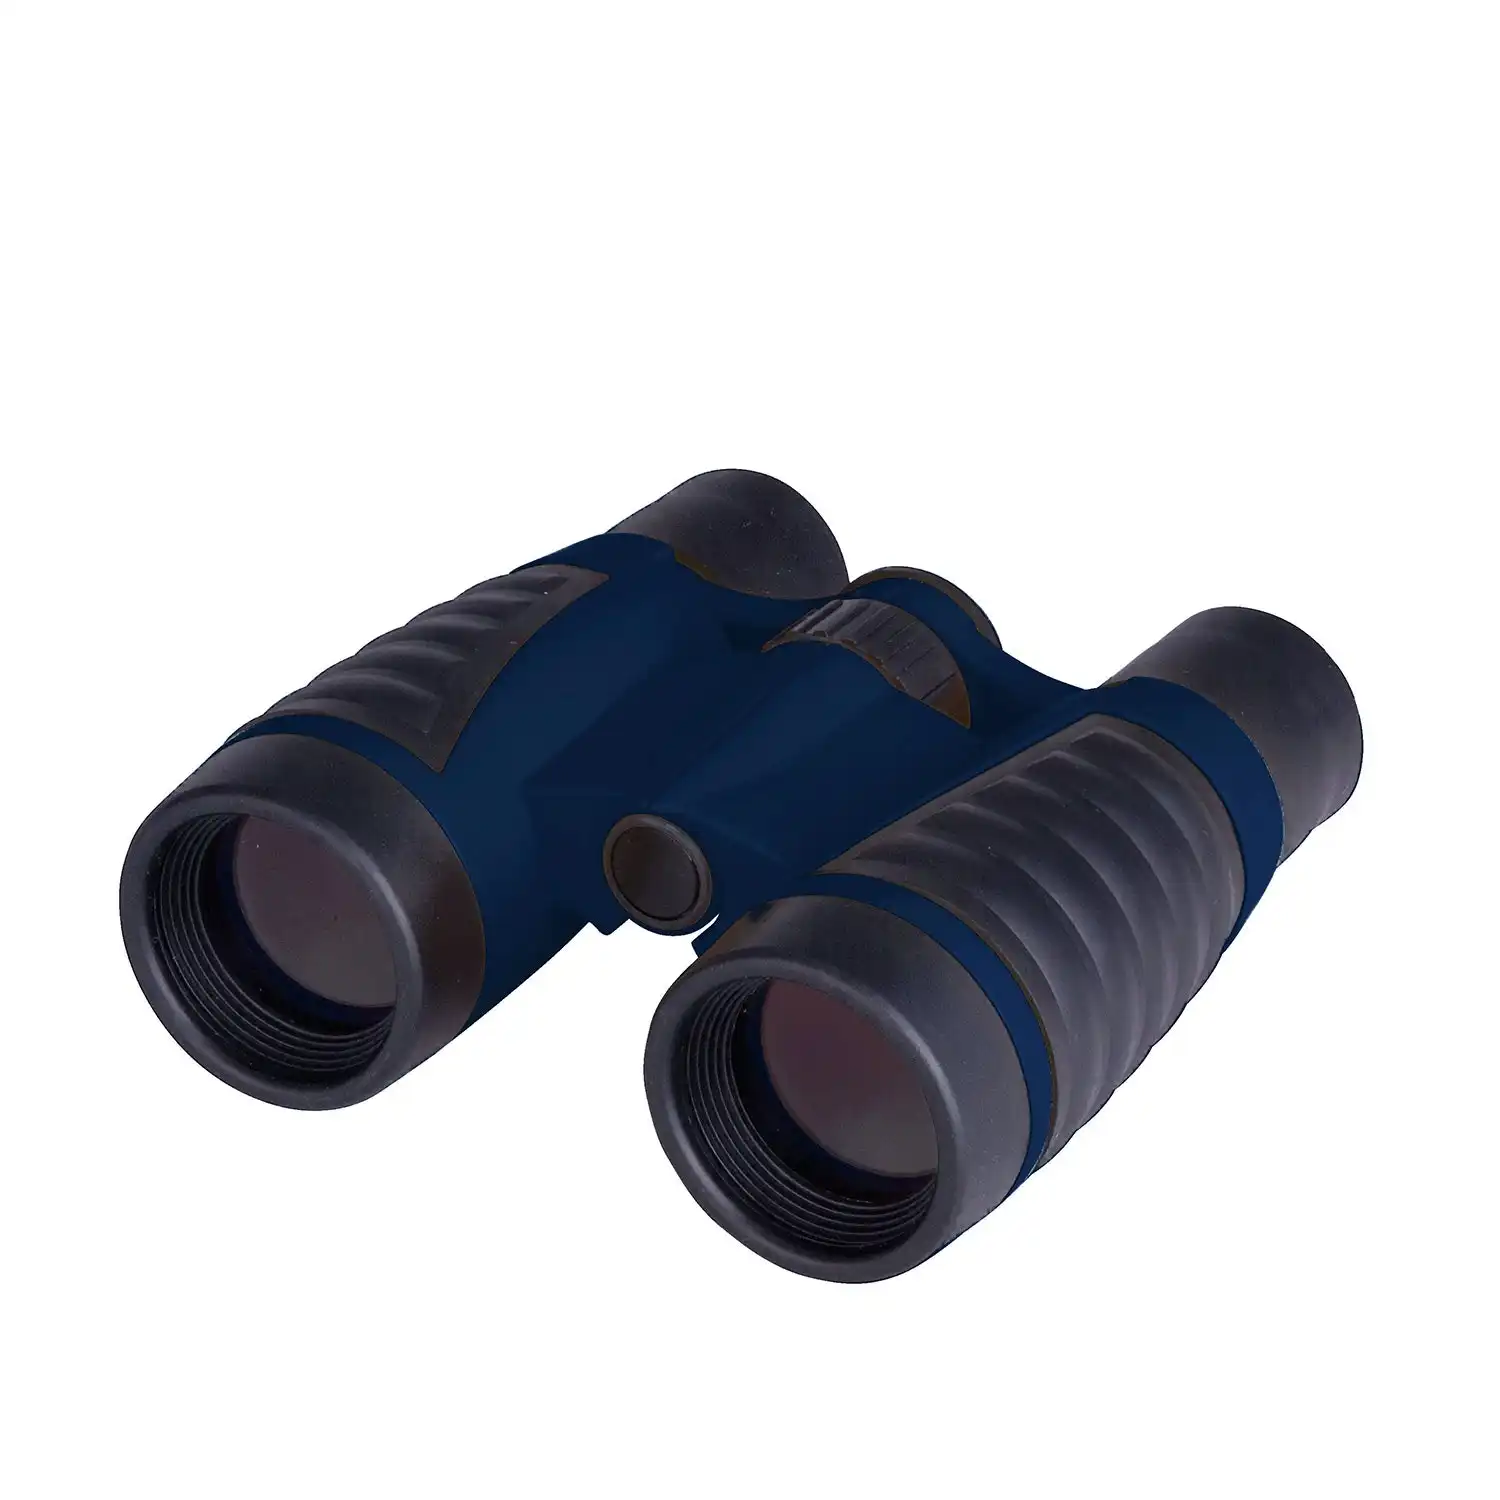 Kids Binoculars 4x30 Adjustable Lightweight Gift for Bird Watching Outdoor